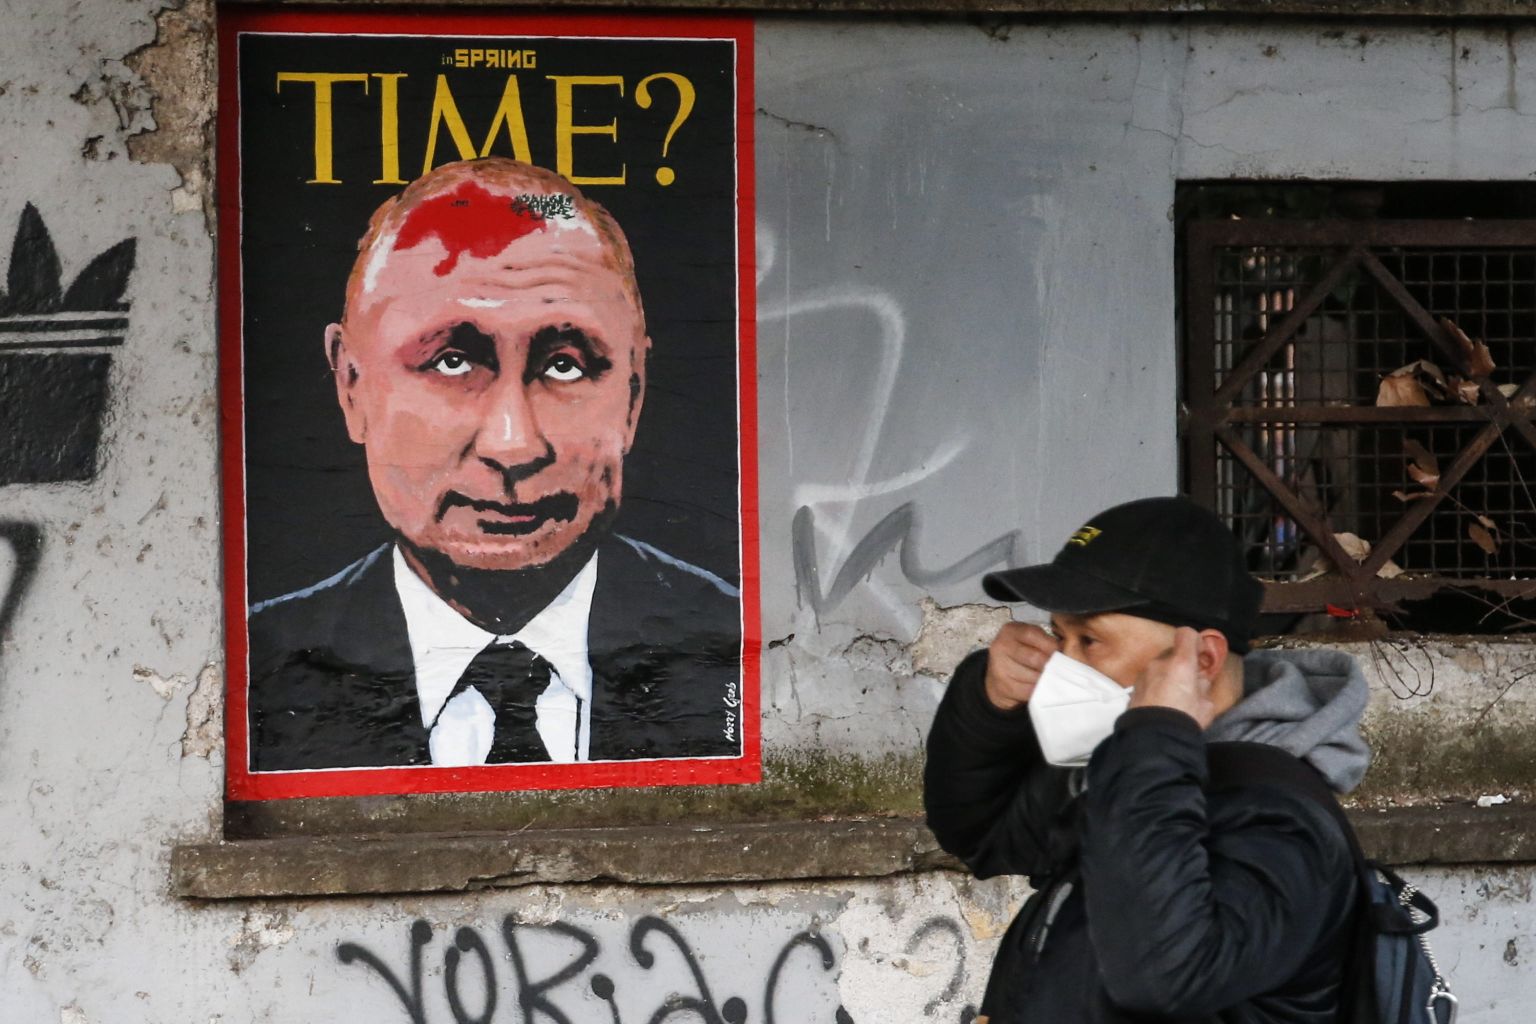 Seinajoonistus Itaalias Roomas, millel tänavakunstnik Harry Greb on kujutanud Venemaa presidenti Vladimir Putinit väljaande Time esikaanel. Ta pea kohal on tekst «In spring time?» («Kevadel?»), mille esimese sõna kirjutamisel on üritatud imiteerida kirillitsat